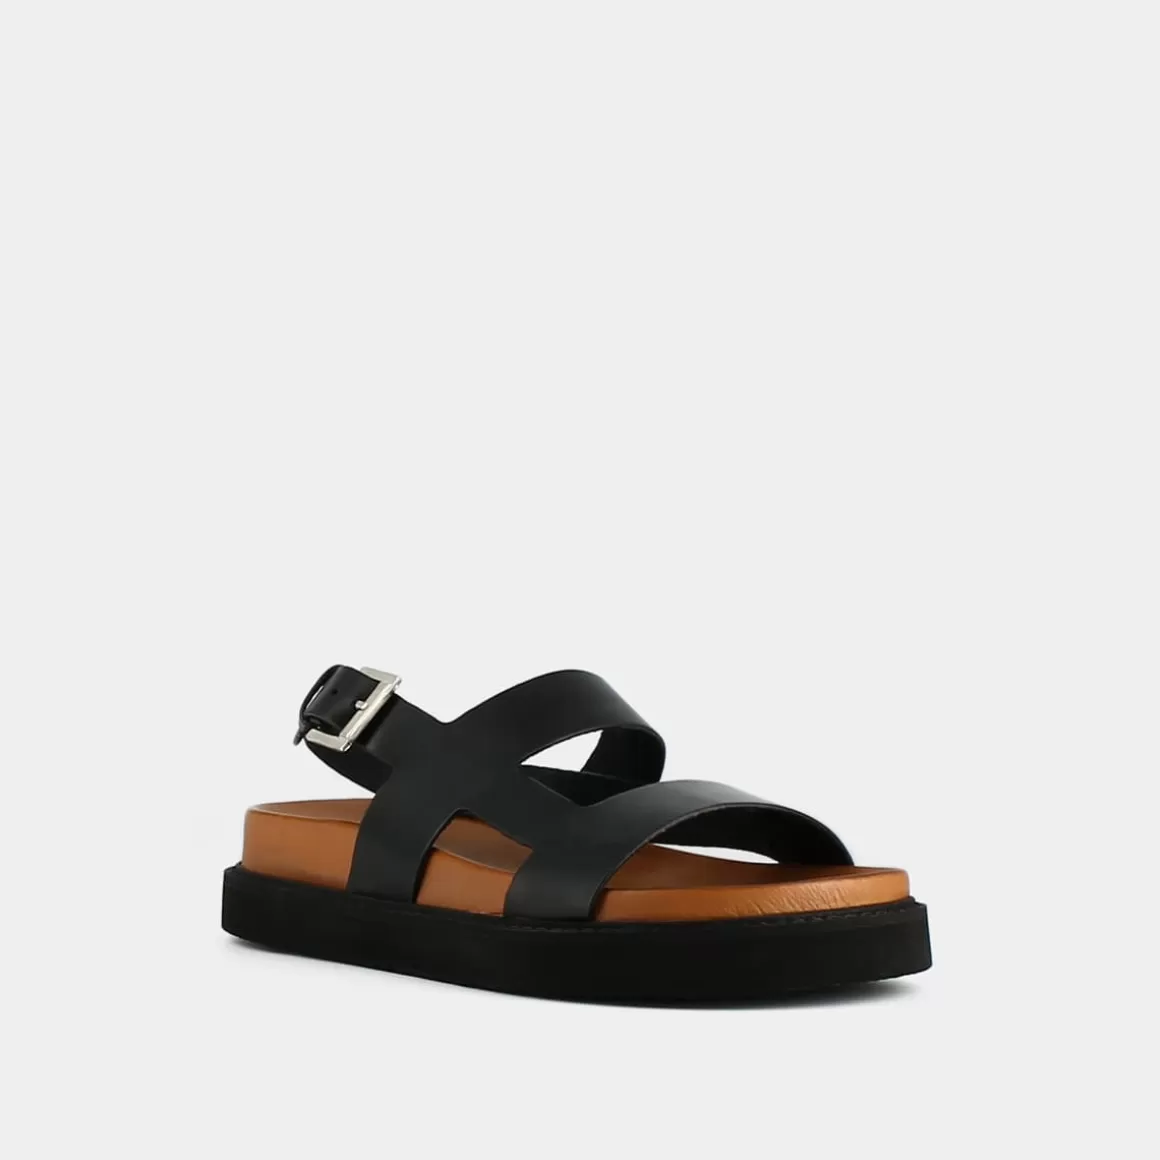 Cross-strap sandals<Jonak Sale